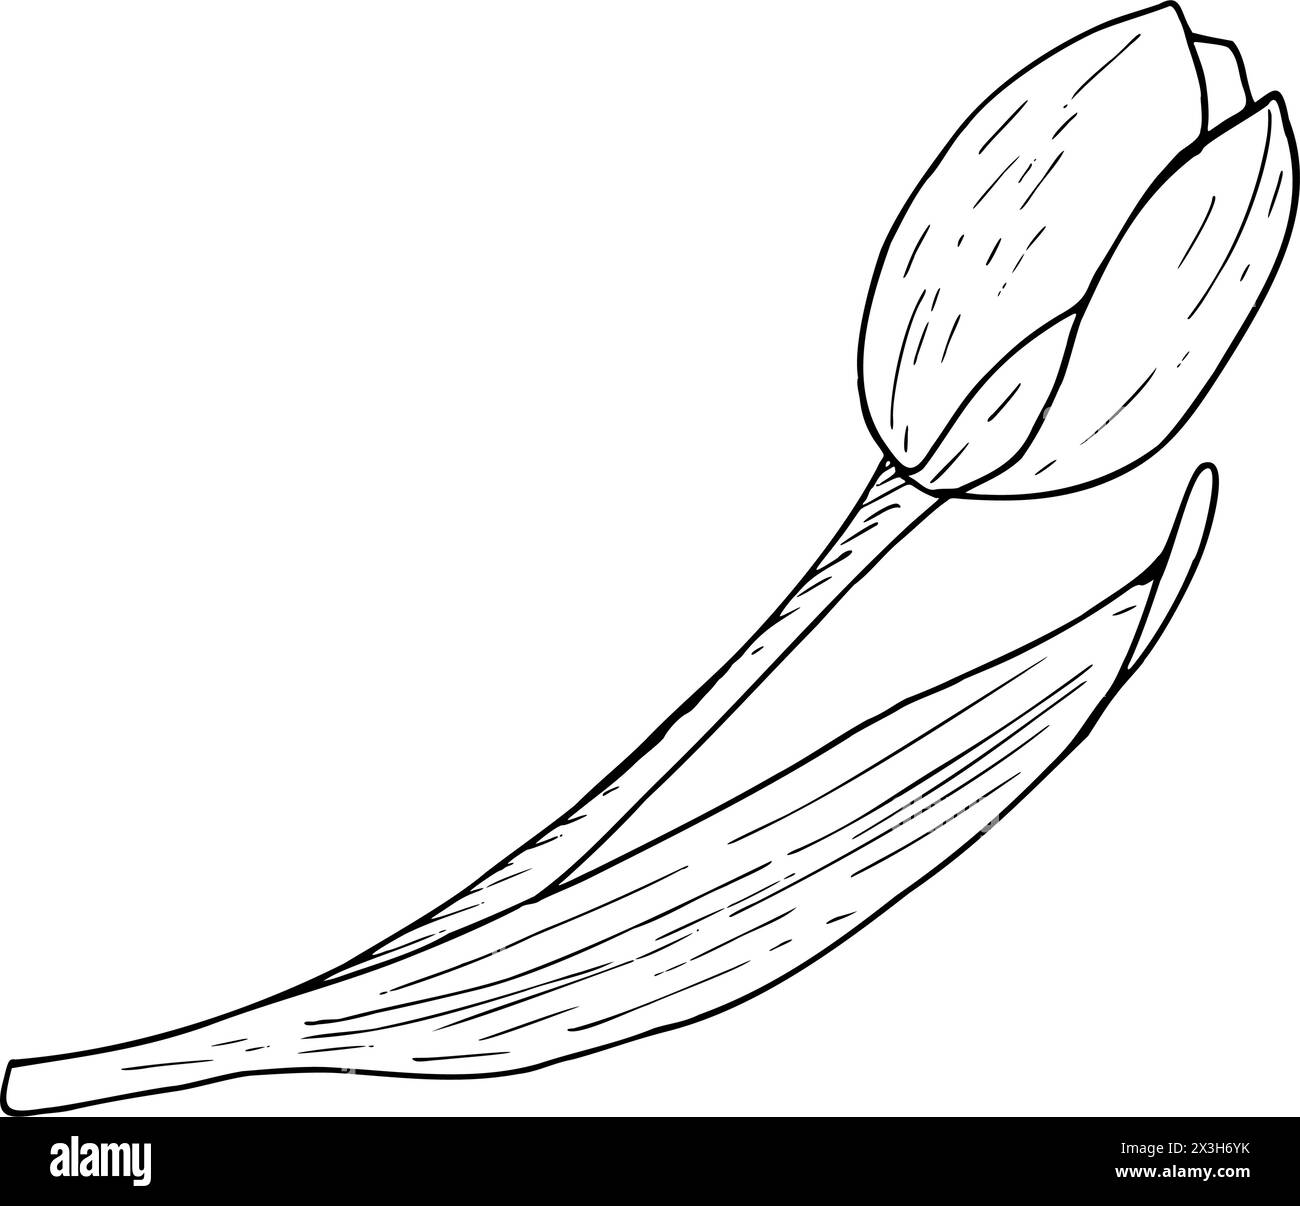 Tulpenblume Vektor-Illustration. Gebogener Kopf mit Blattfedern, schwarze Umrisszeichnung. Grußkarte mit botanischer Blüte. Kontur der Tintenlinie Stock Vektor